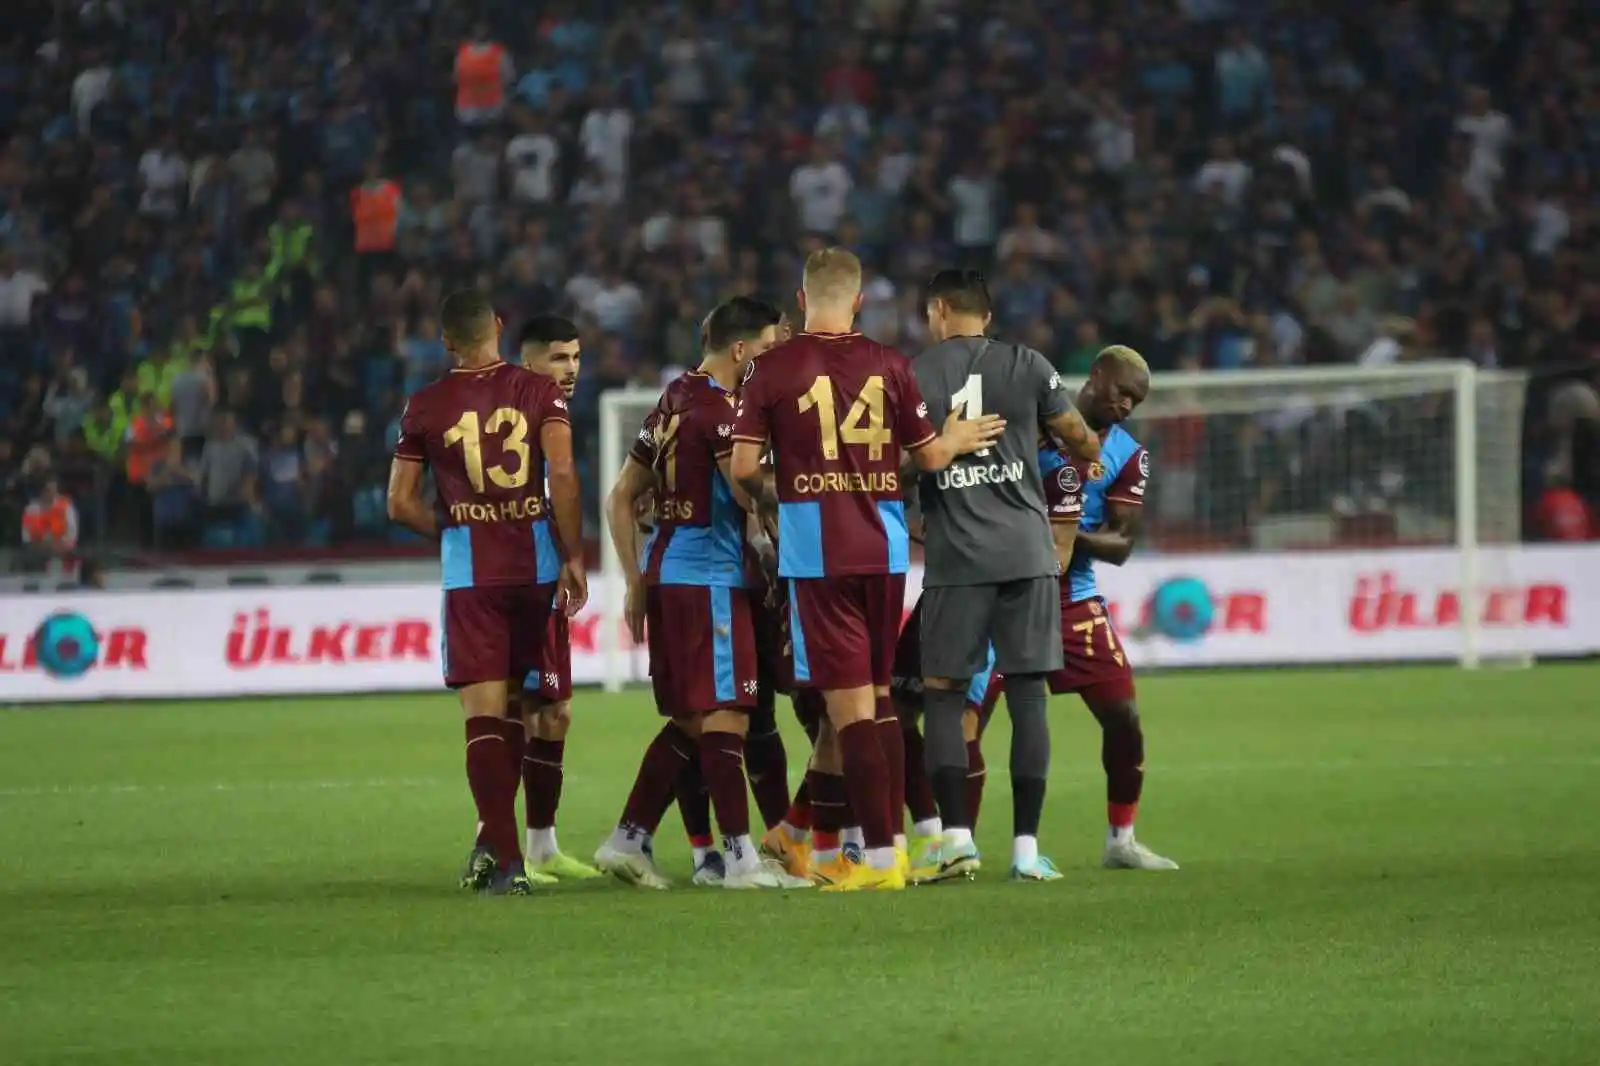 Spor Toto Süper Lig: Trabzonspor: 1 - Hatayspor: 0 (Maç sonucu)
